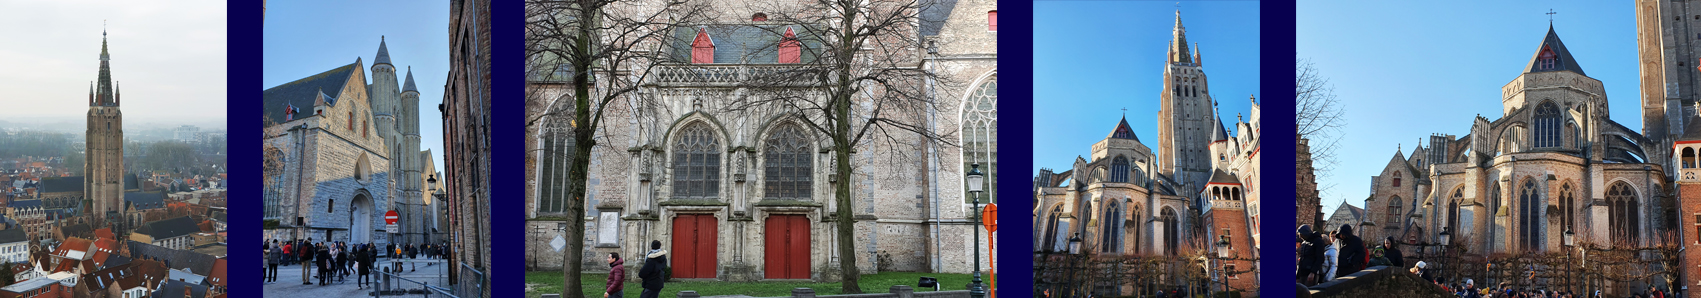 Uitgelichte Foto - Brugge - Onze-Lieve-Vrouwe Kerk